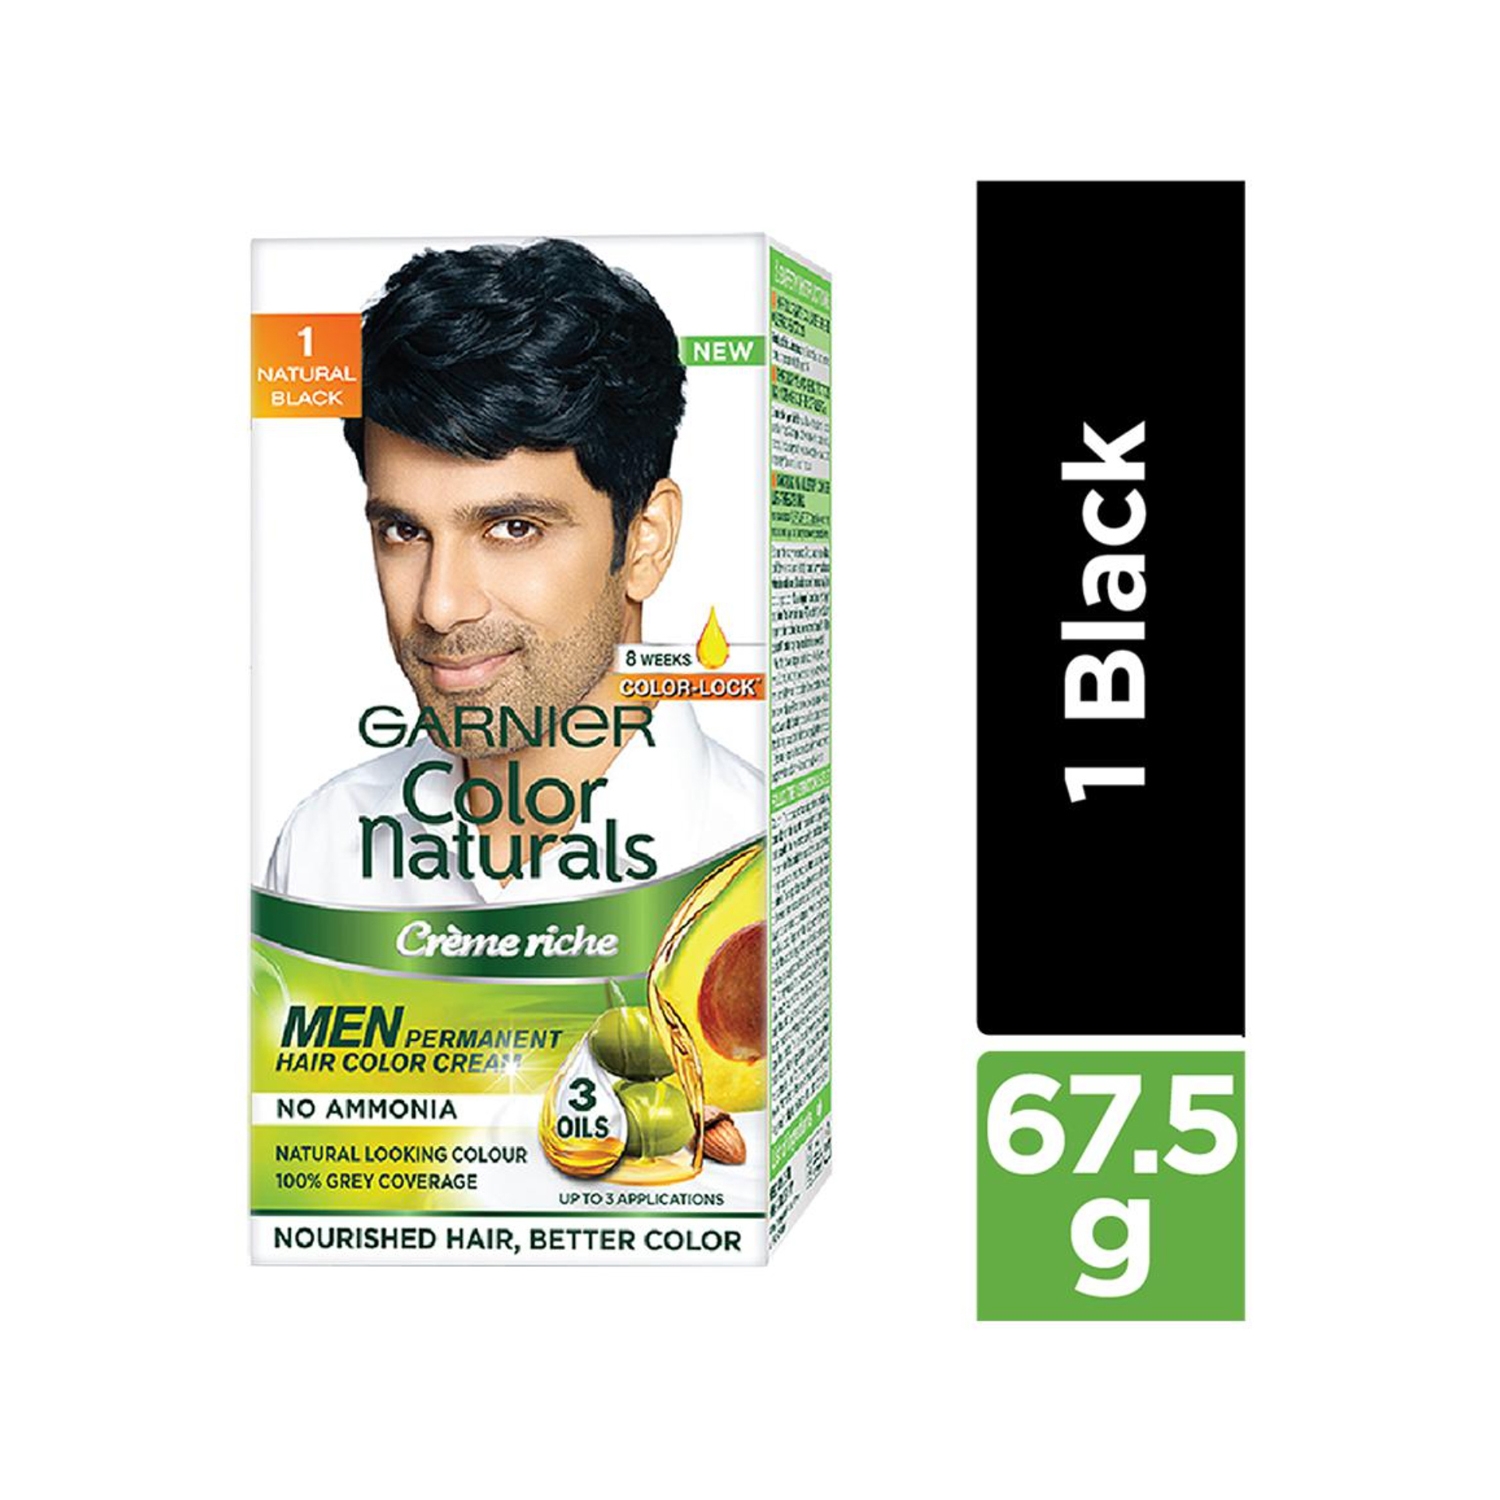 Garnier | Garnier Color Naturals Creme Riche for Men - 1 Natural Black (60g)